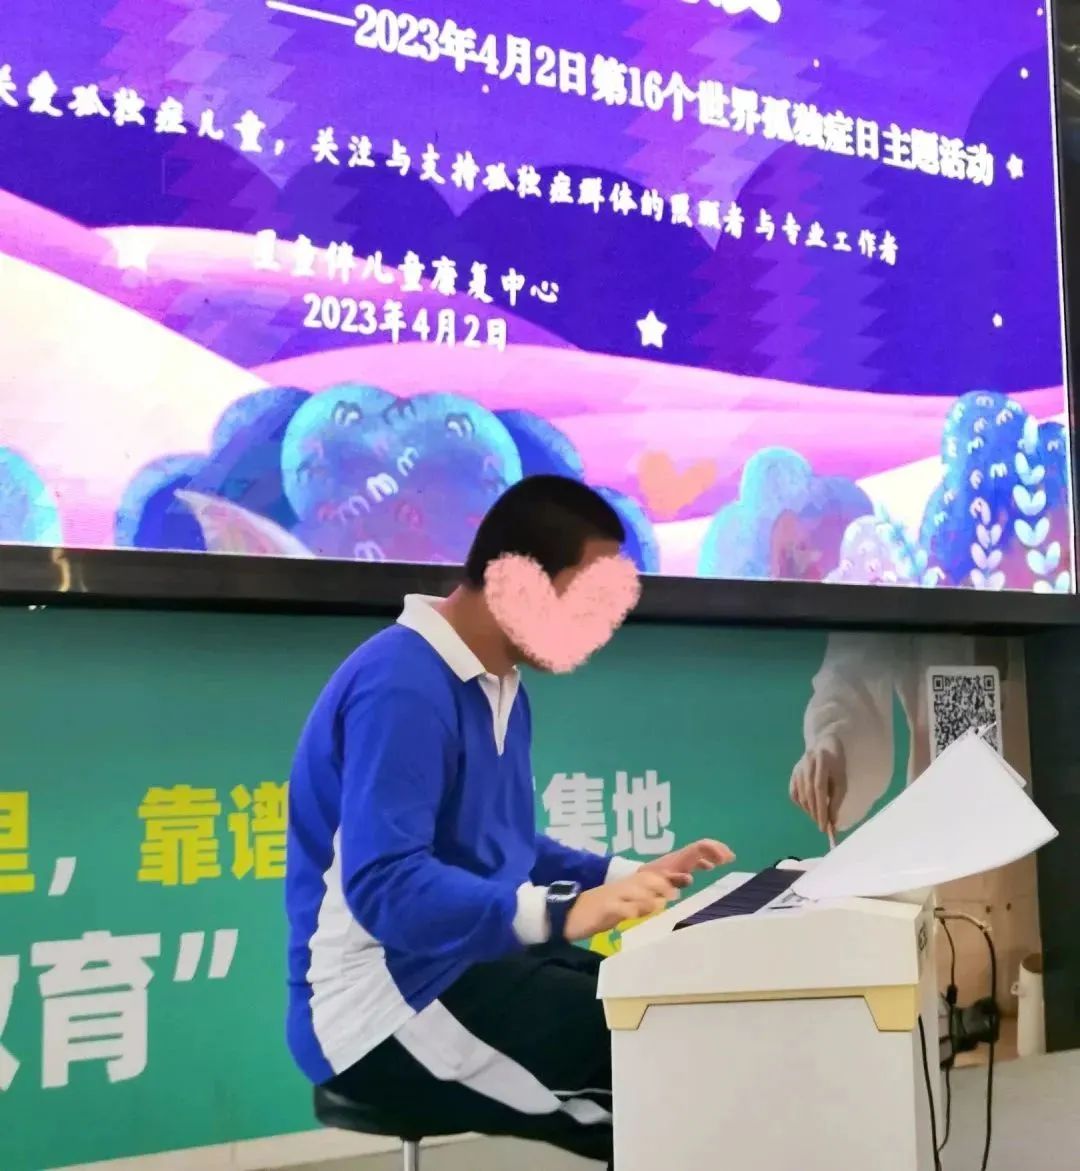 深圳市星童伴康复世界孤独症日主题活动——交一个“星”朋友